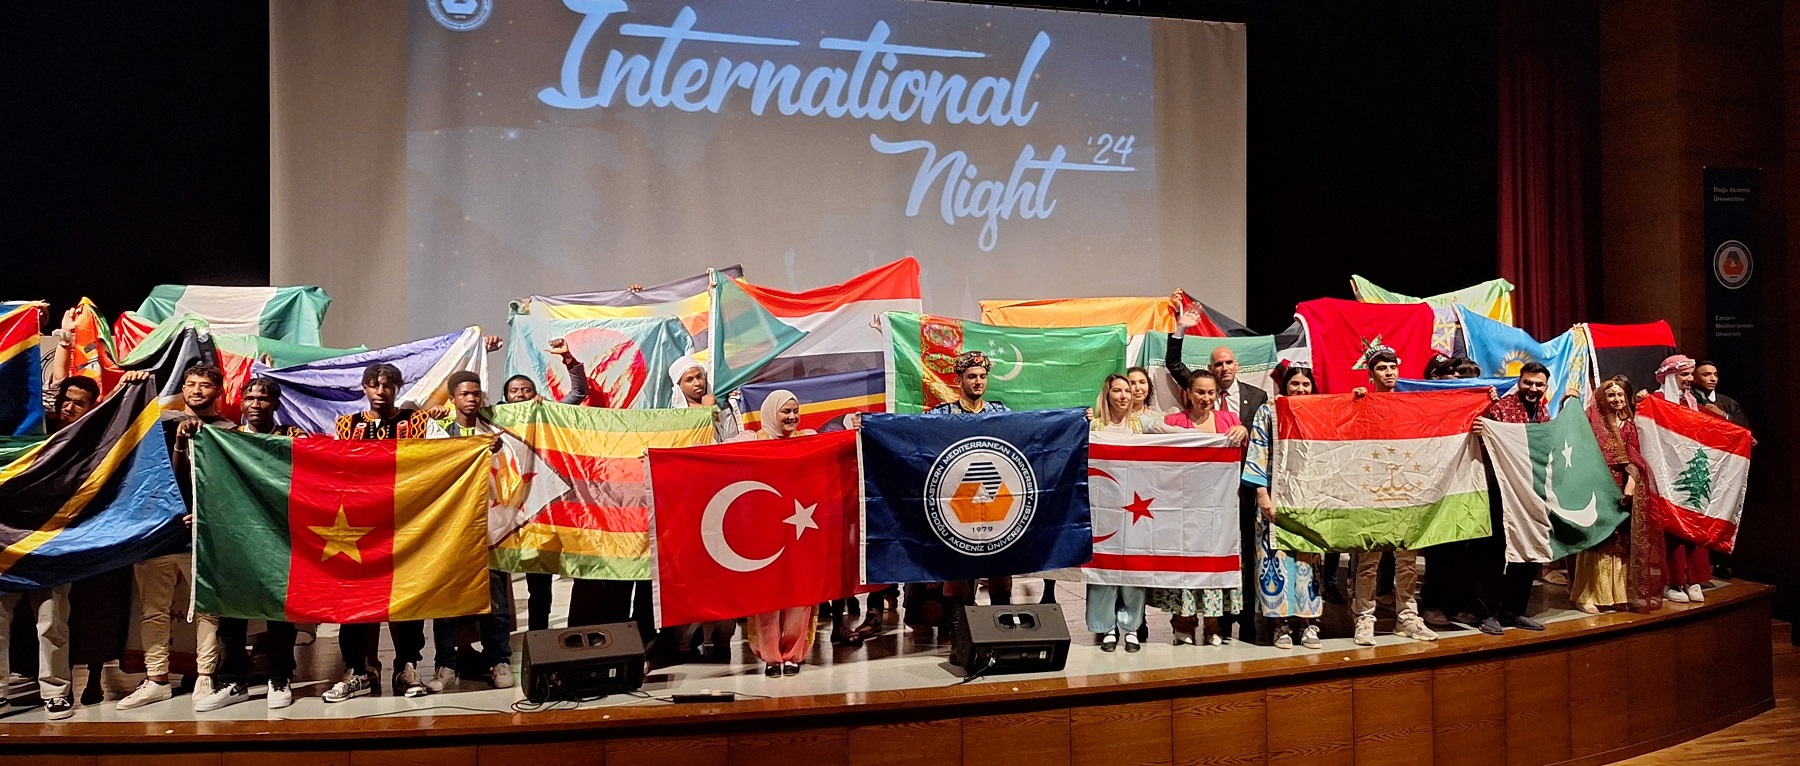 DAÜ Uluslararası Gece Etkinliği Renkli Görüntülere Sahne Oldu: 26. Bahar Festivali'nde Kültürler Buluştu